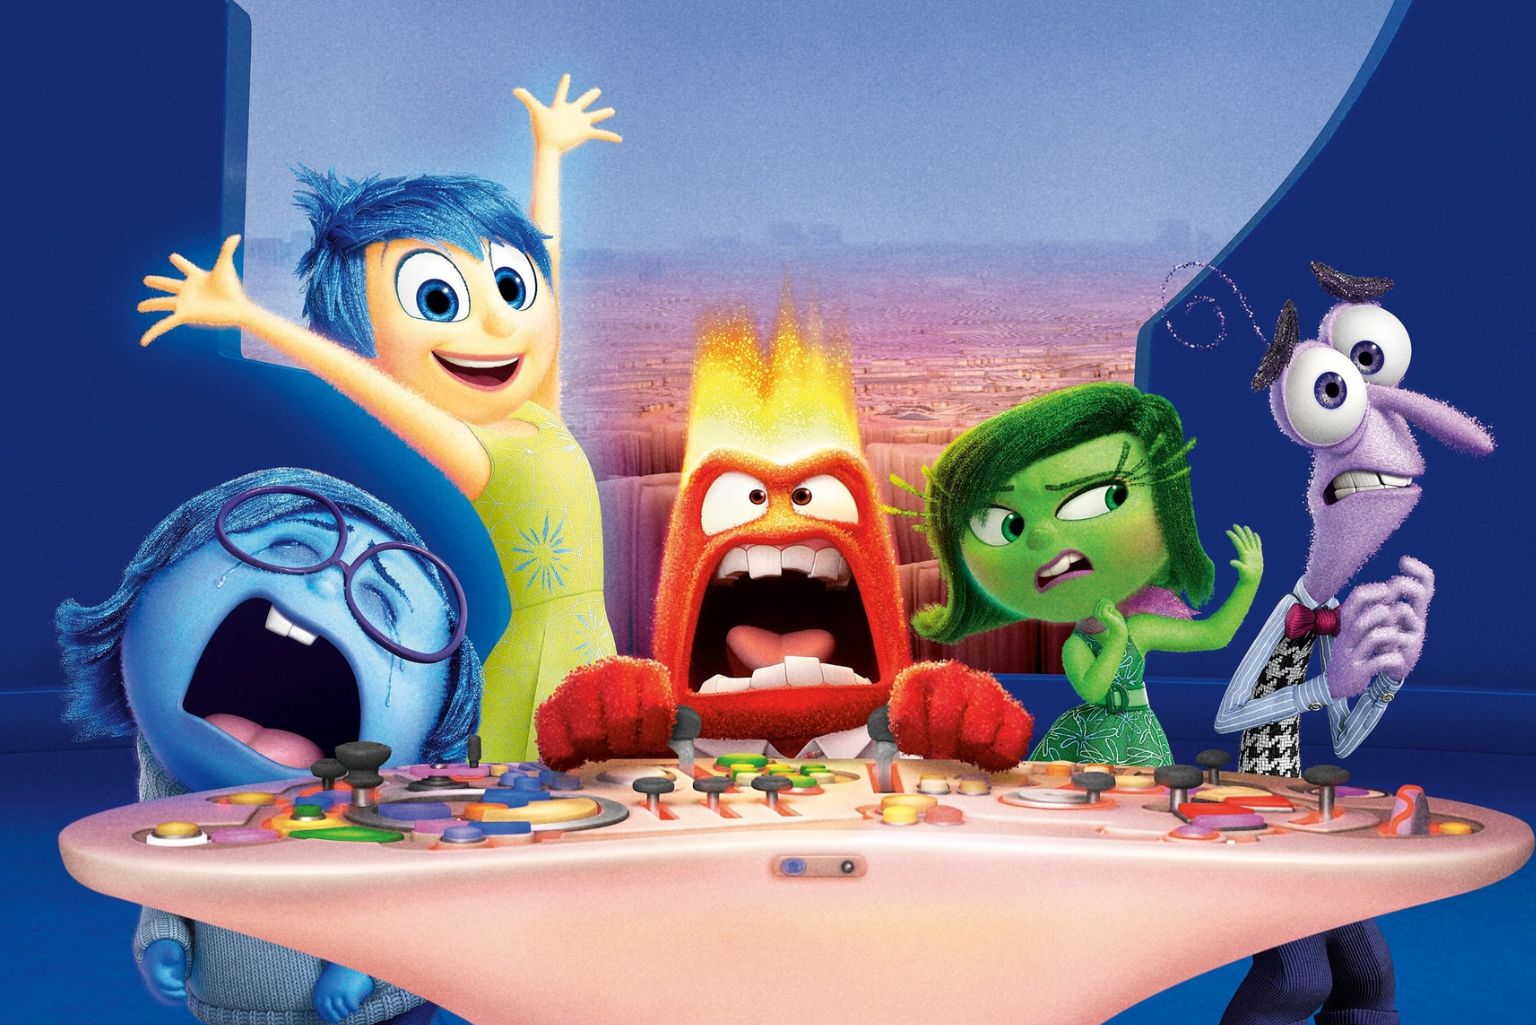 Divertida Mente 3 Será Lançado Pela Pixar E Disney? Confira A Previsão